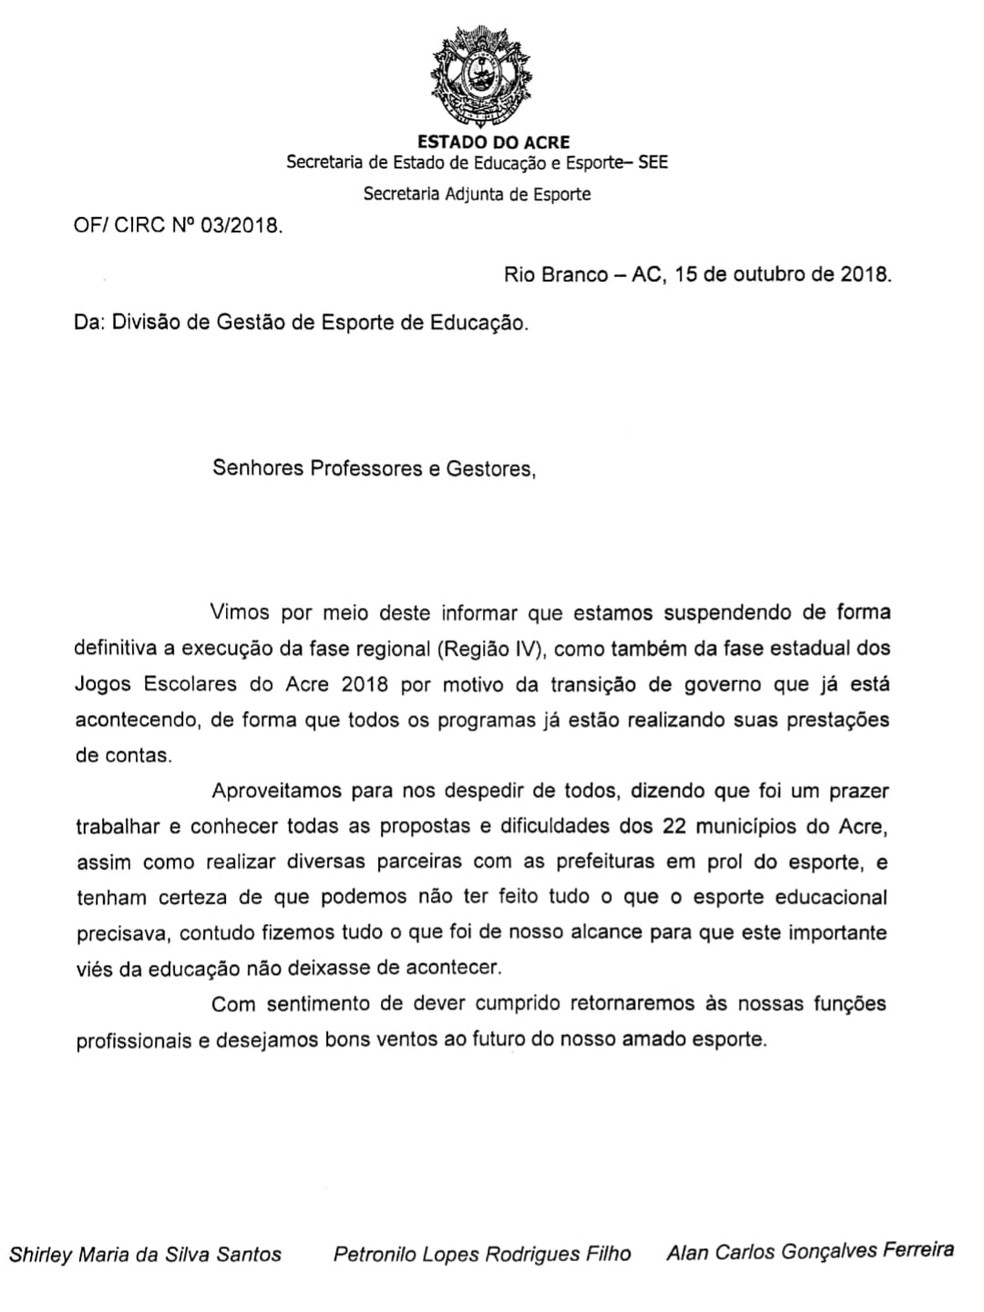 Ofício sobre cancelamento das últimas fases do Jogos Escolares do Acre — Foto: Divulgação/SEEAC